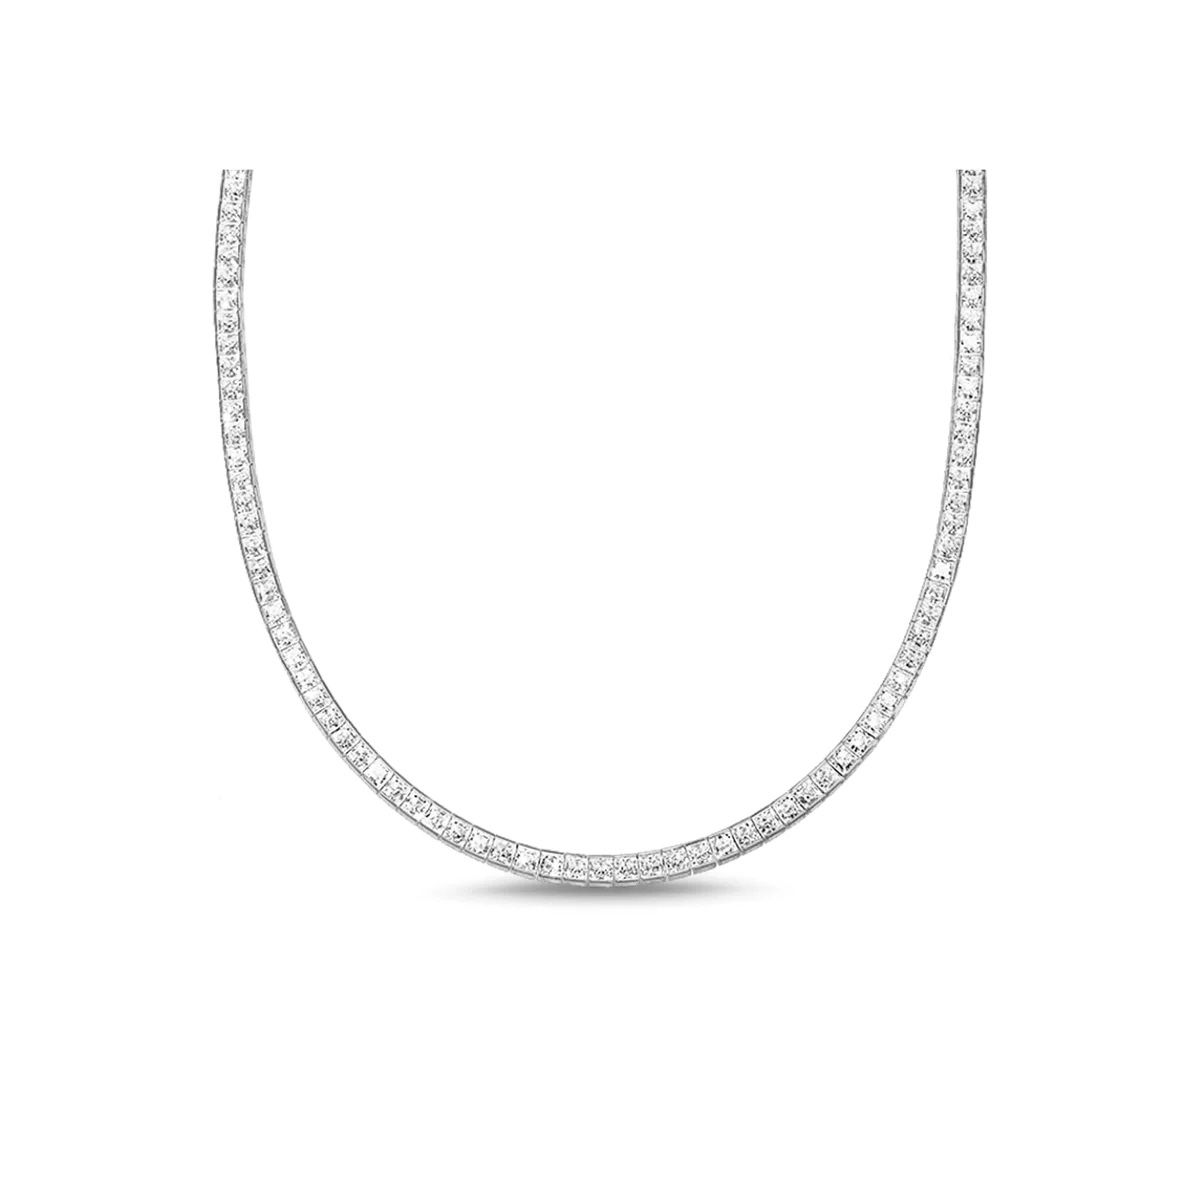 *VALENTINES SALE* 18kt White Gold Vermeil Princess Cut Diamond Tennis Necklace